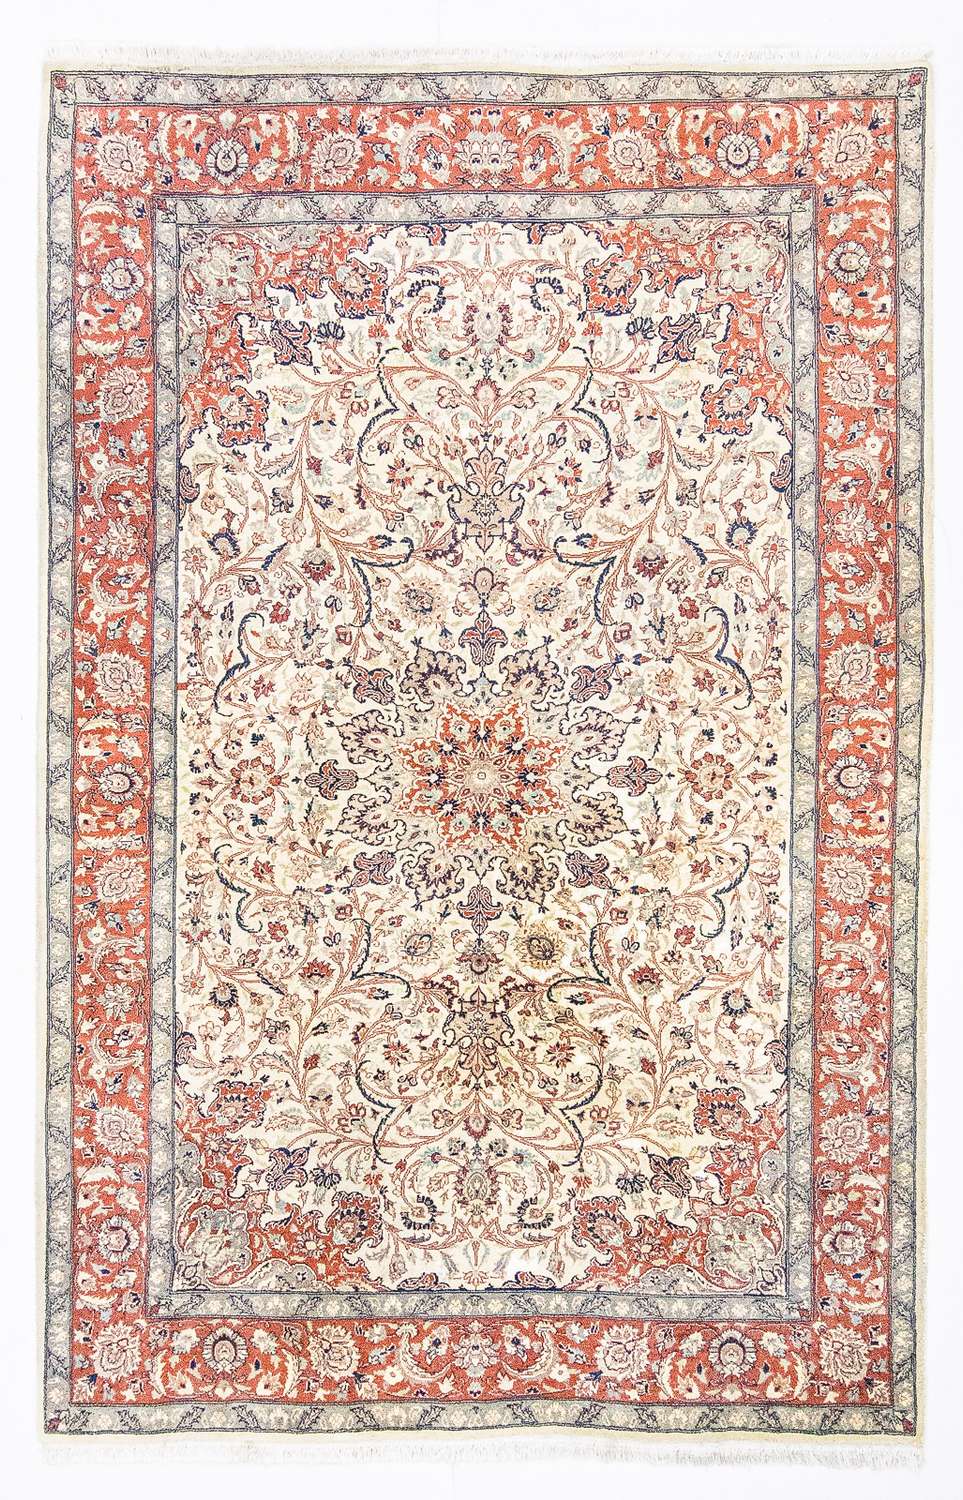 Orientalsk tæppe - 223 x 143 cm - beige